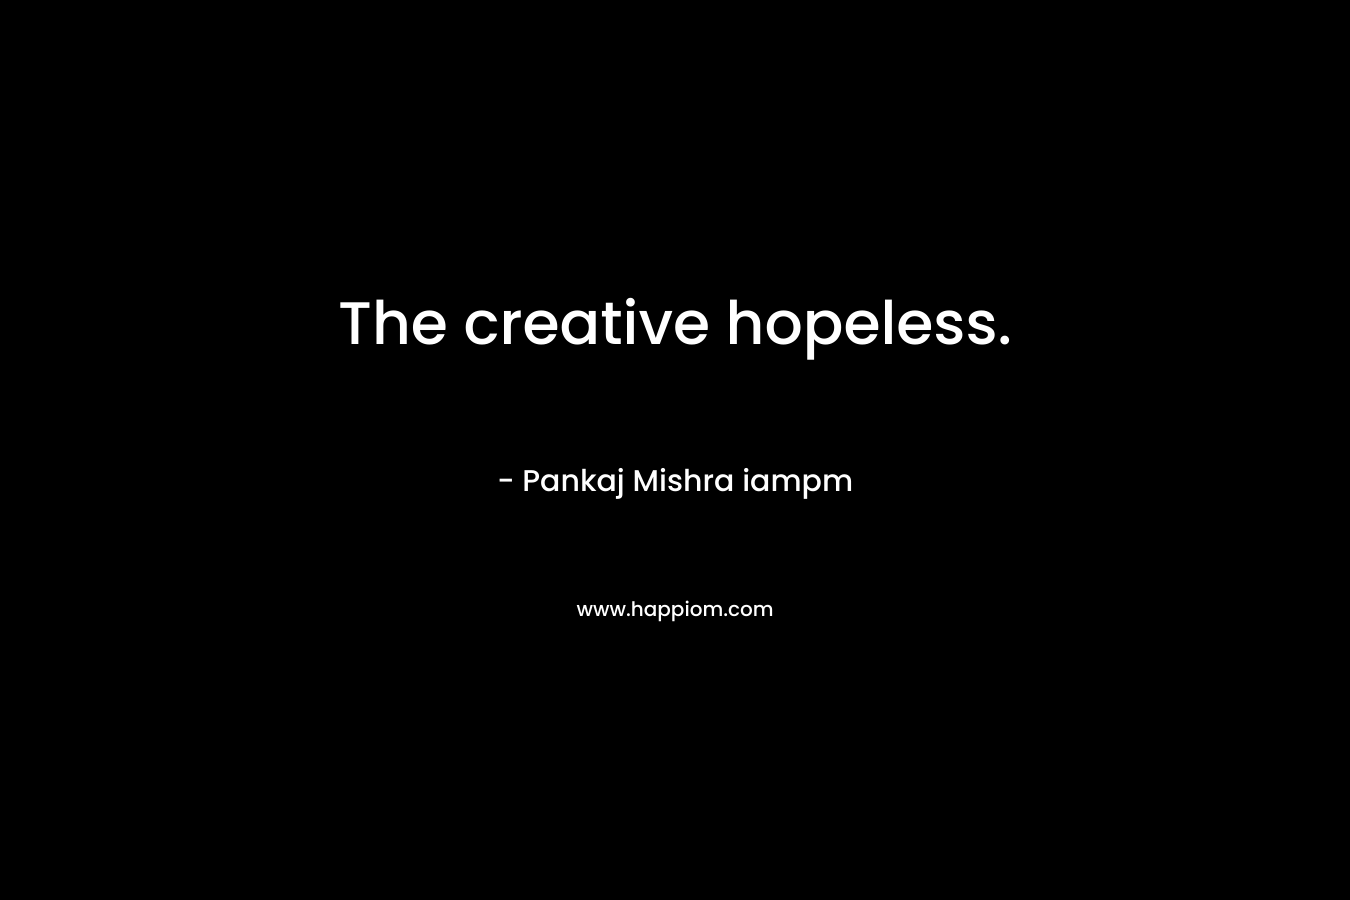 The creative hopeless.